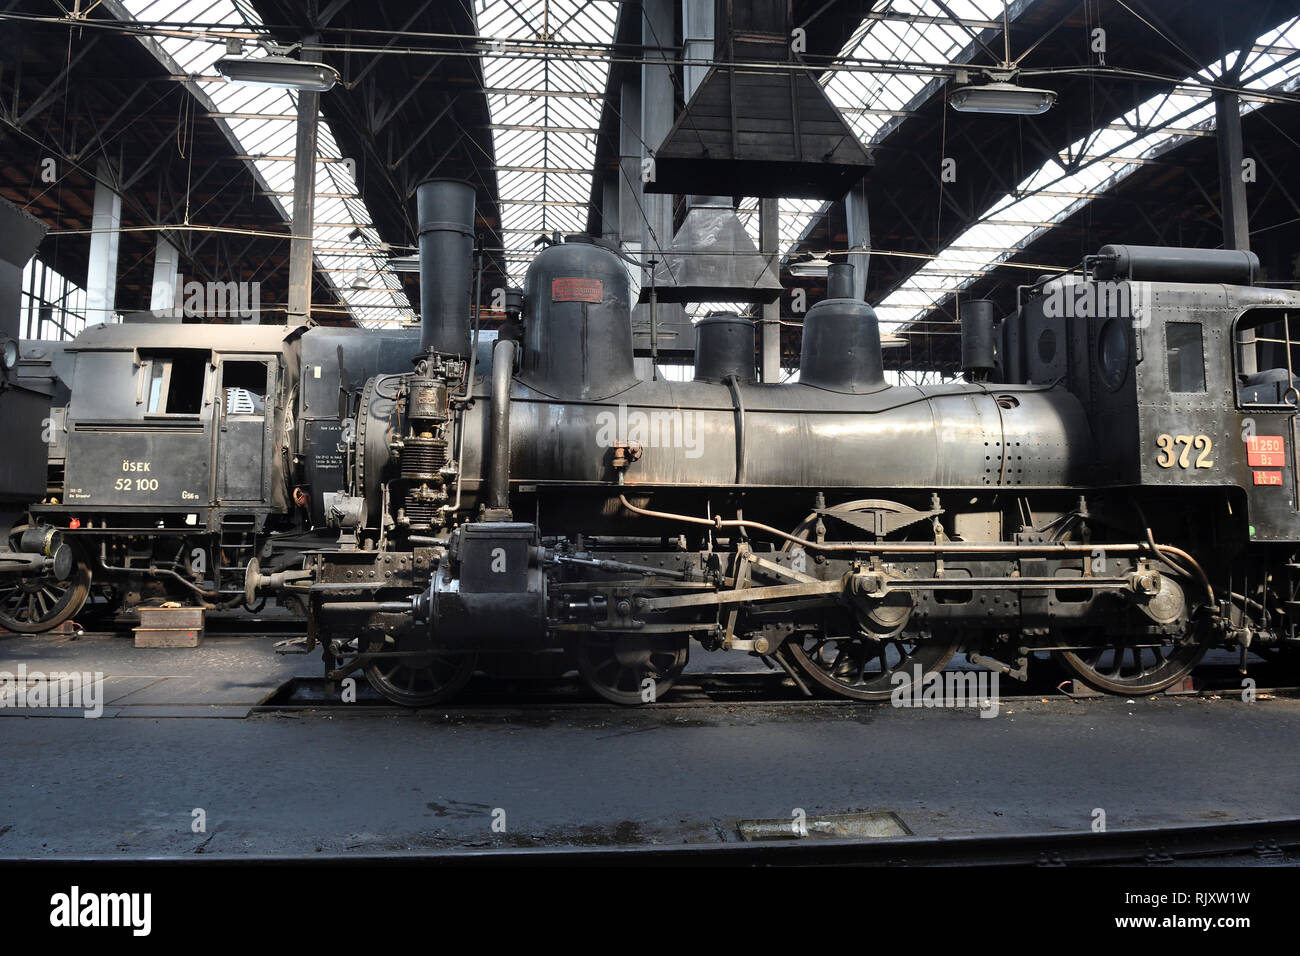 eisenbahnmuseum;das heizhaus;strasshof;vienna;austria;steam locomotive;372 Stock Photo